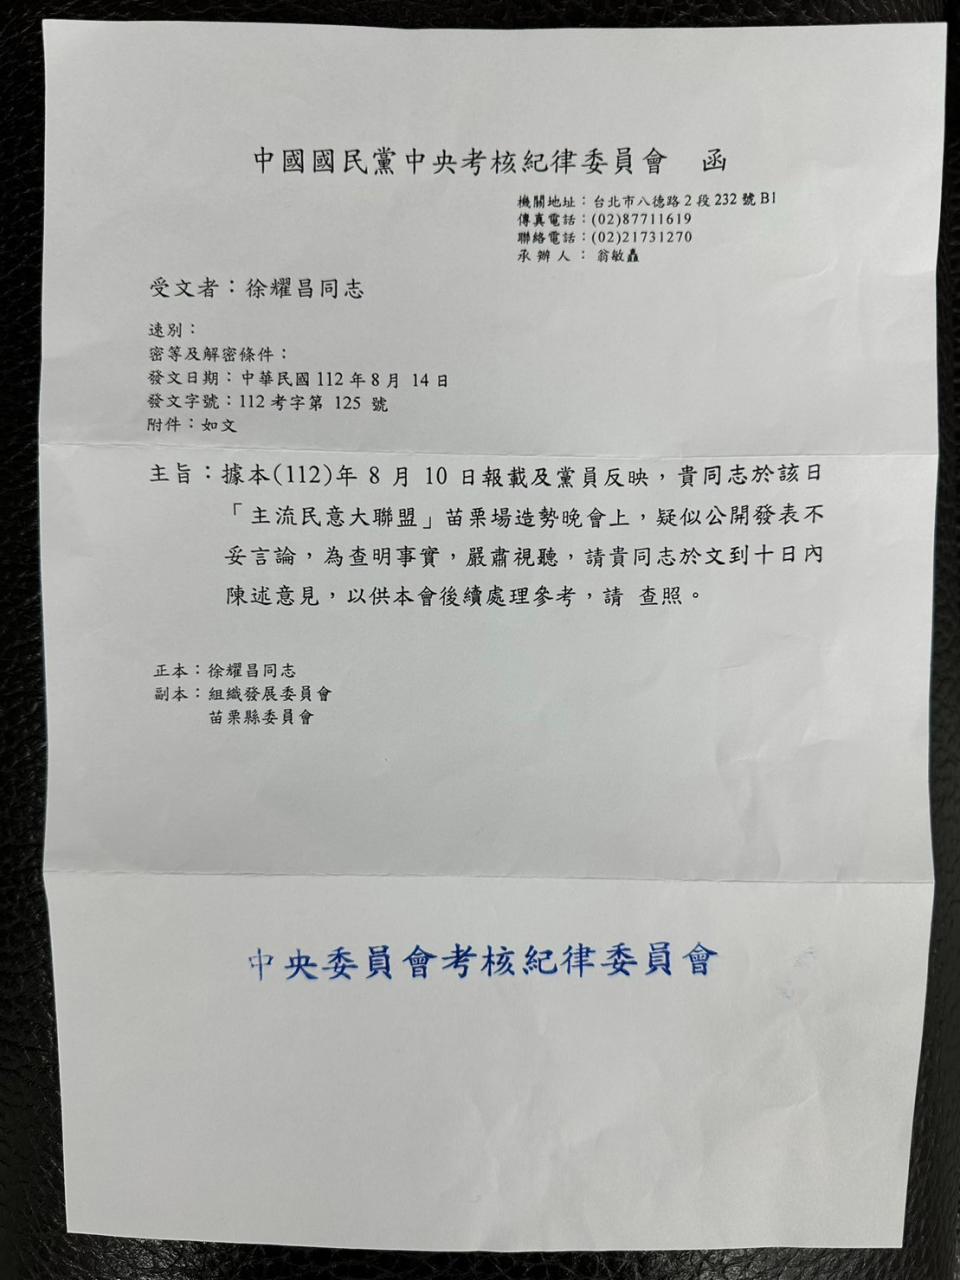 徐耀昌在臉書貼出國民黨要他說明的公文。翻攝徐耀昌臉書